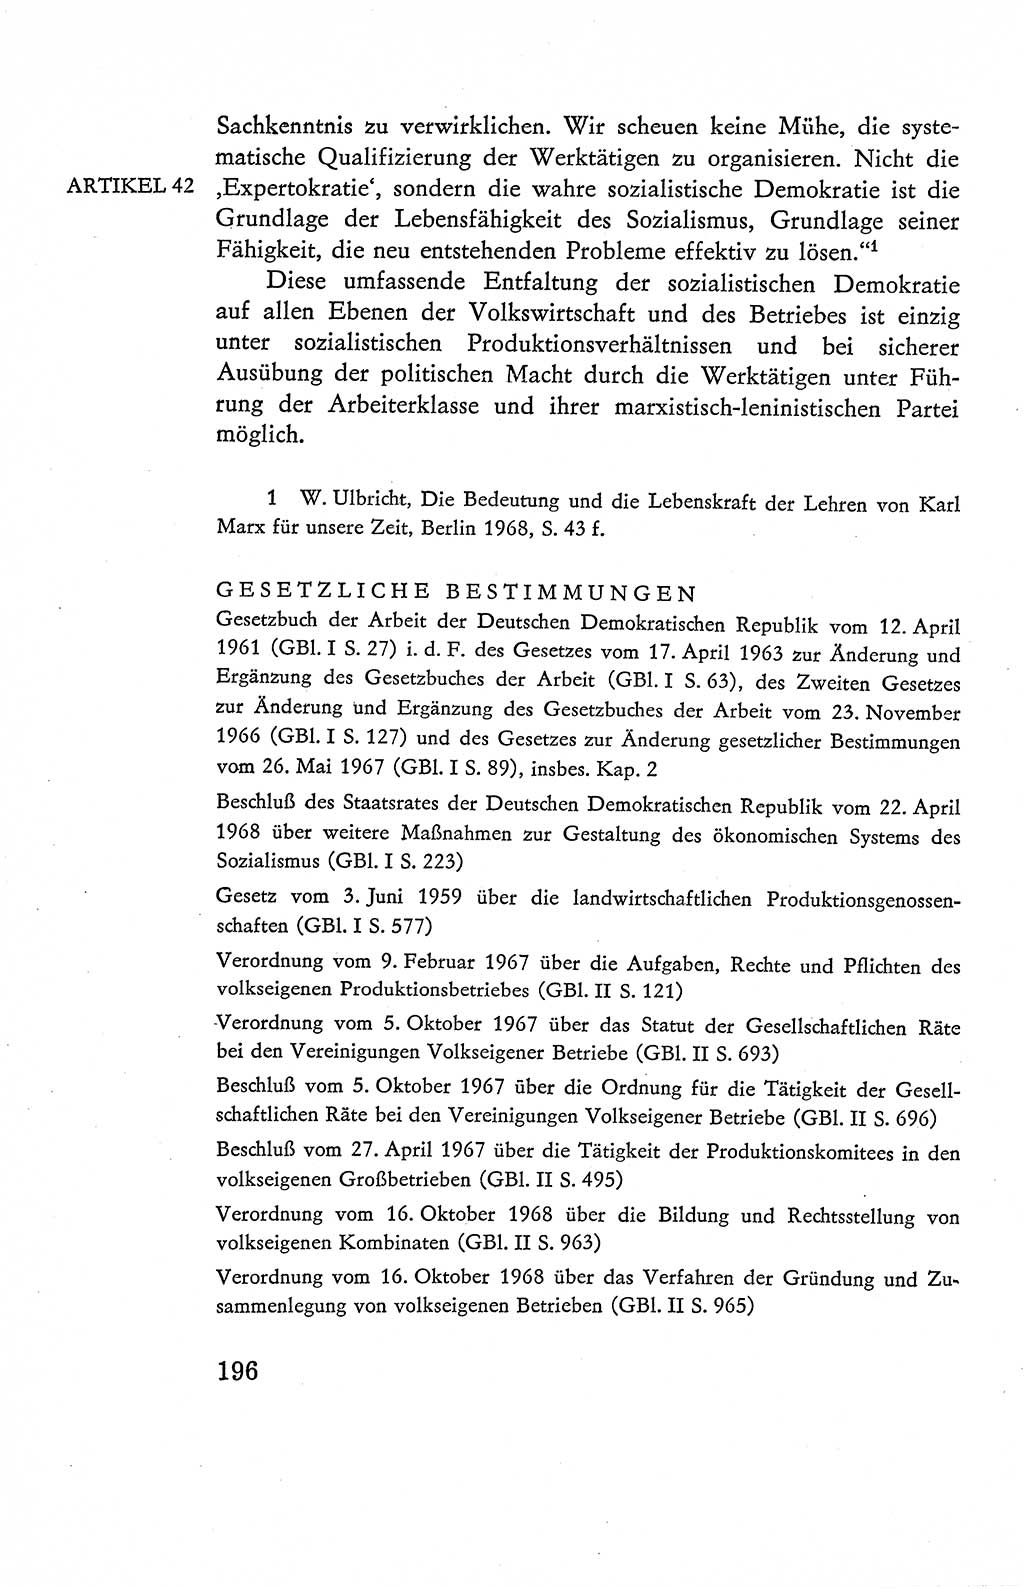 Verfassung der Deutschen Demokratischen Republik (DDR), Dokumente, Kommentar 1969, Band 2, Seite 196 (Verf. DDR Dok. Komm. 1969, Bd. 2, S. 196)